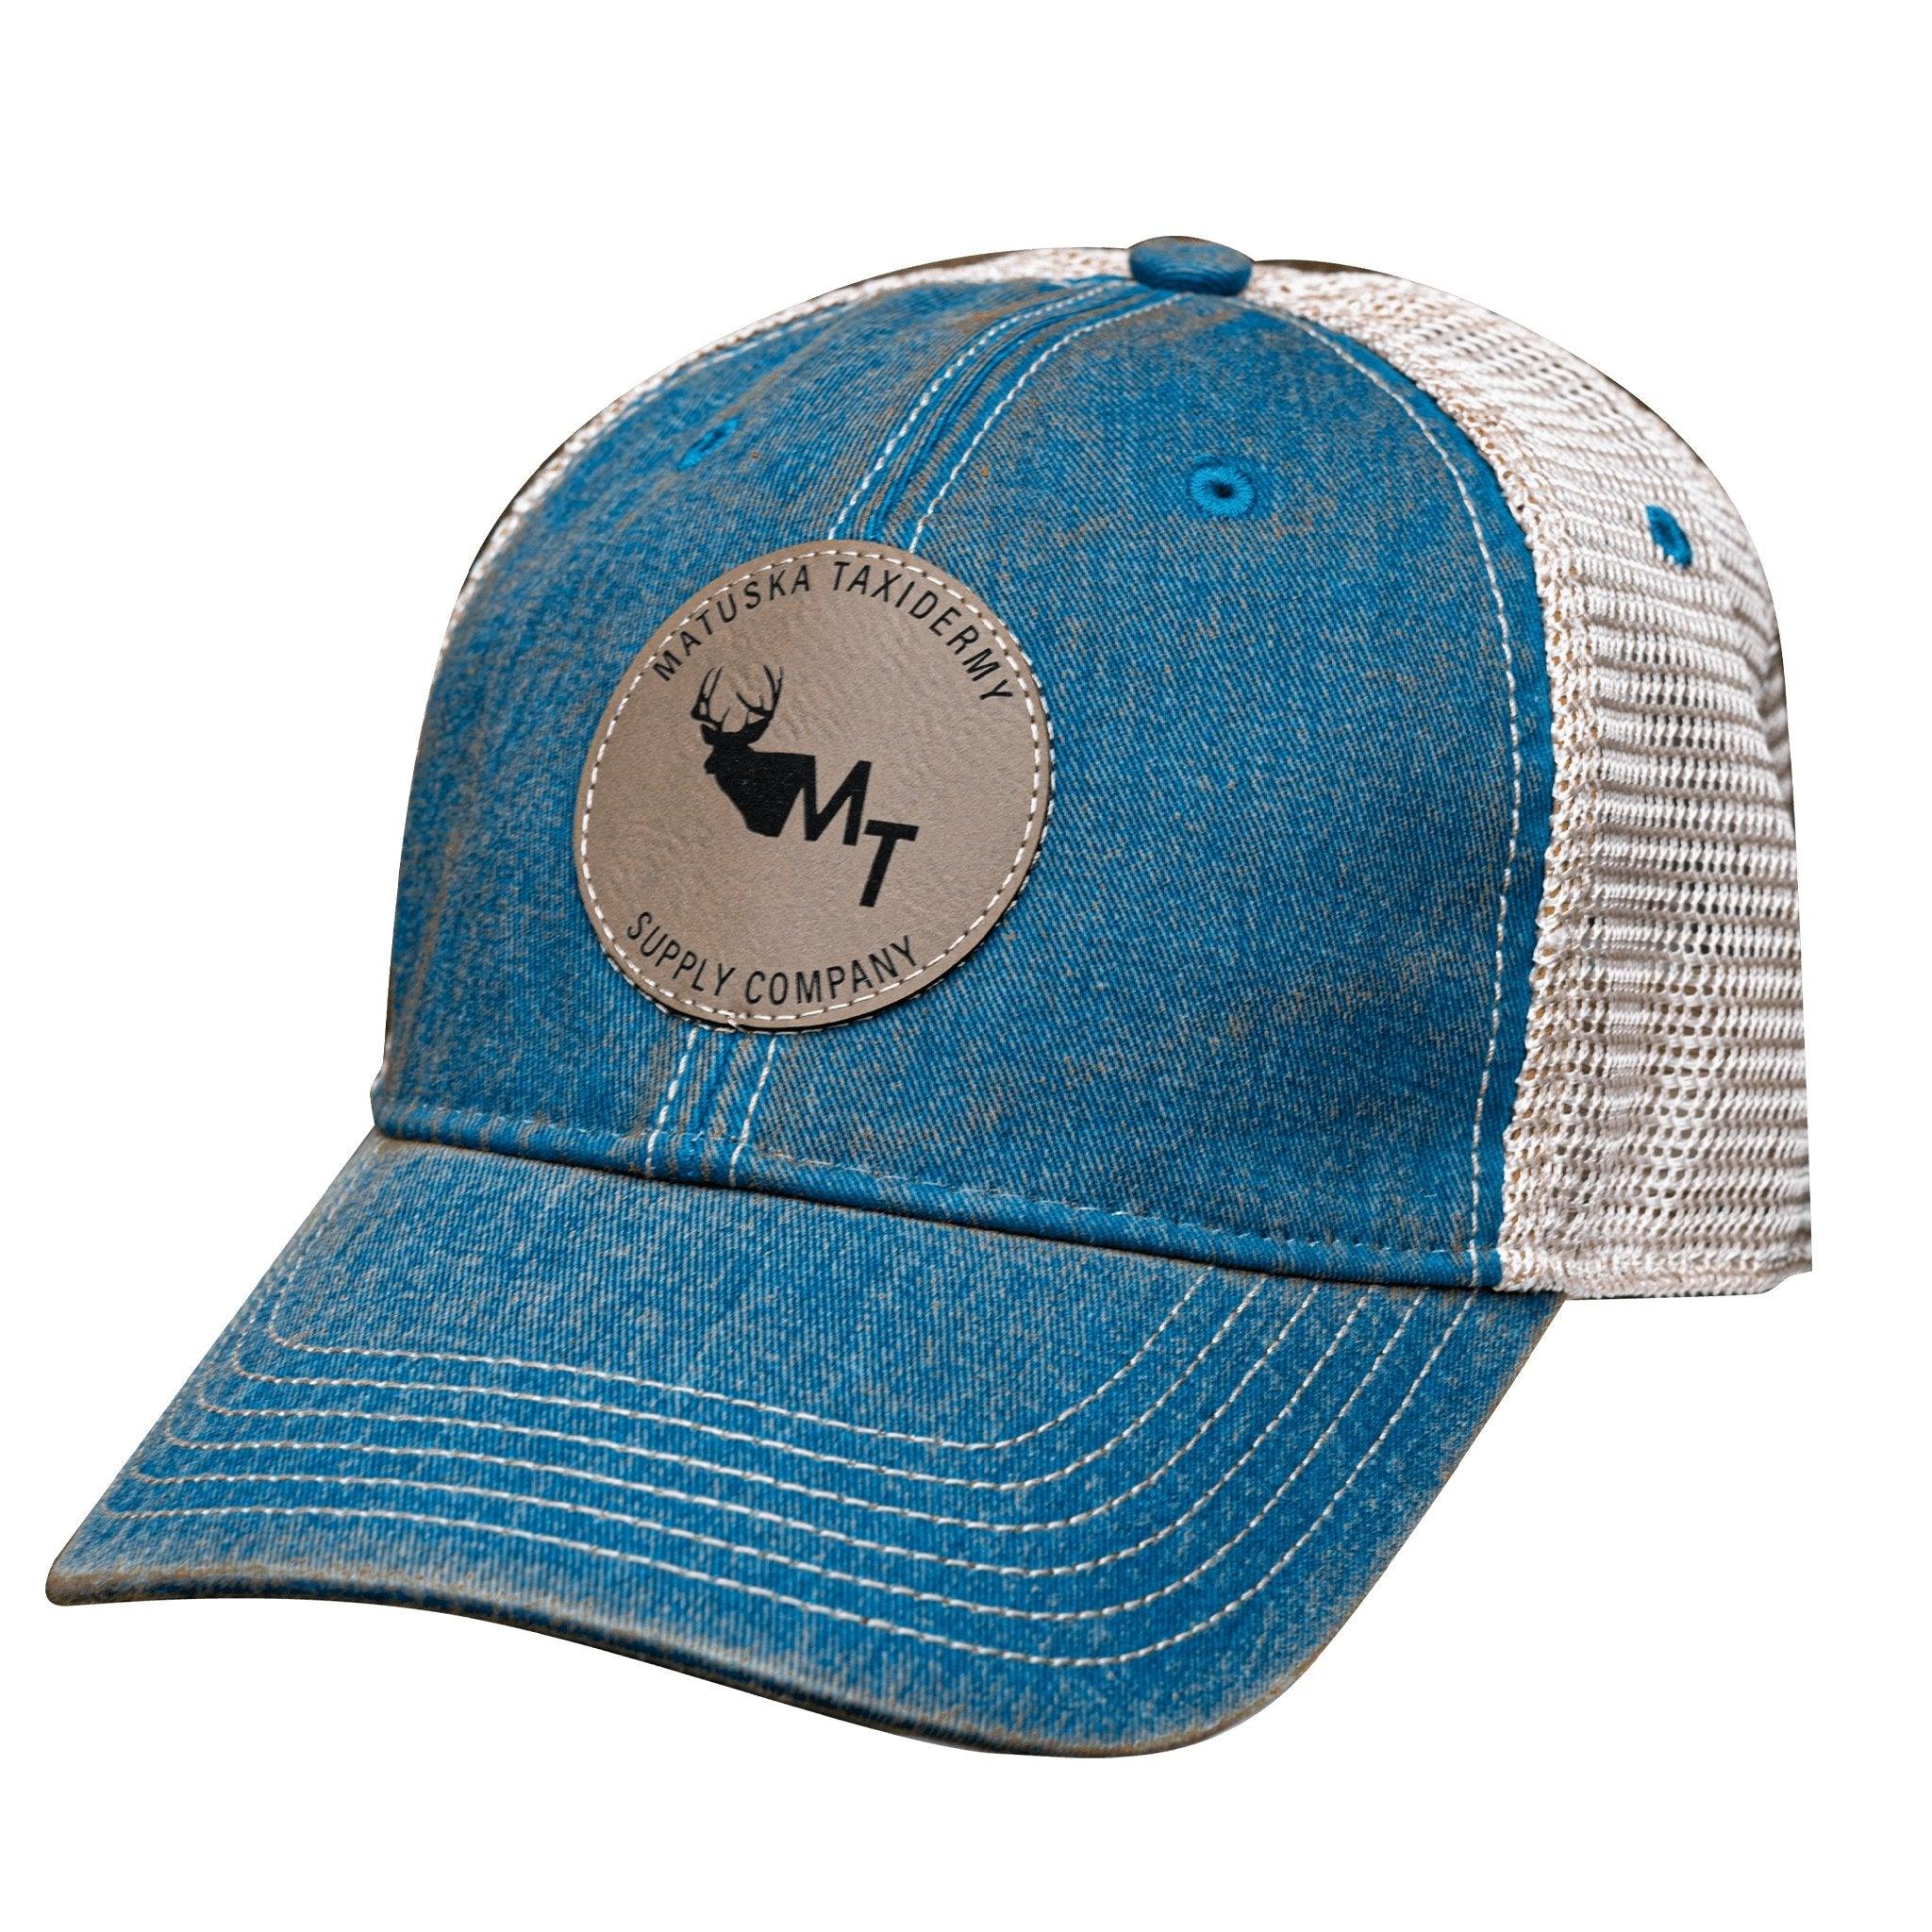 Marine Blue Hat - Matuska Taxidermy Supply Company